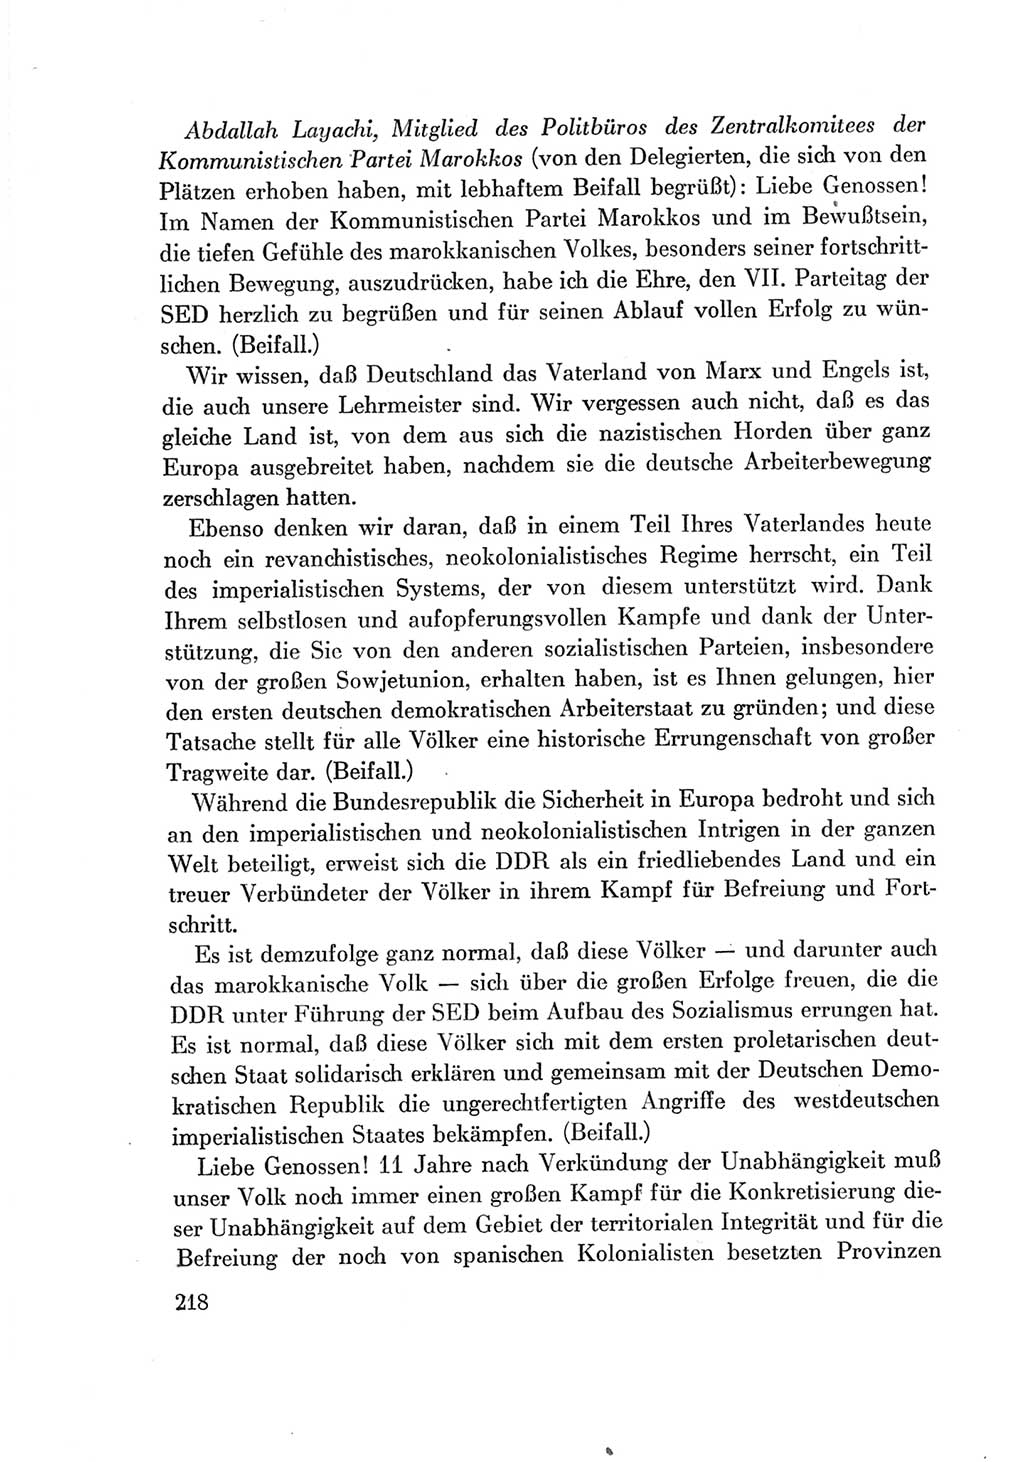 Protokoll der Verhandlungen des Ⅶ. Parteitages der Sozialistischen Einheitspartei Deutschlands (SED) [Deutsche Demokratische Republik (DDR)] 1967, Band Ⅱ, Seite 218 (Prot. Verh. Ⅶ. PT SED DDR 1967, Bd. Ⅱ, S. 218)